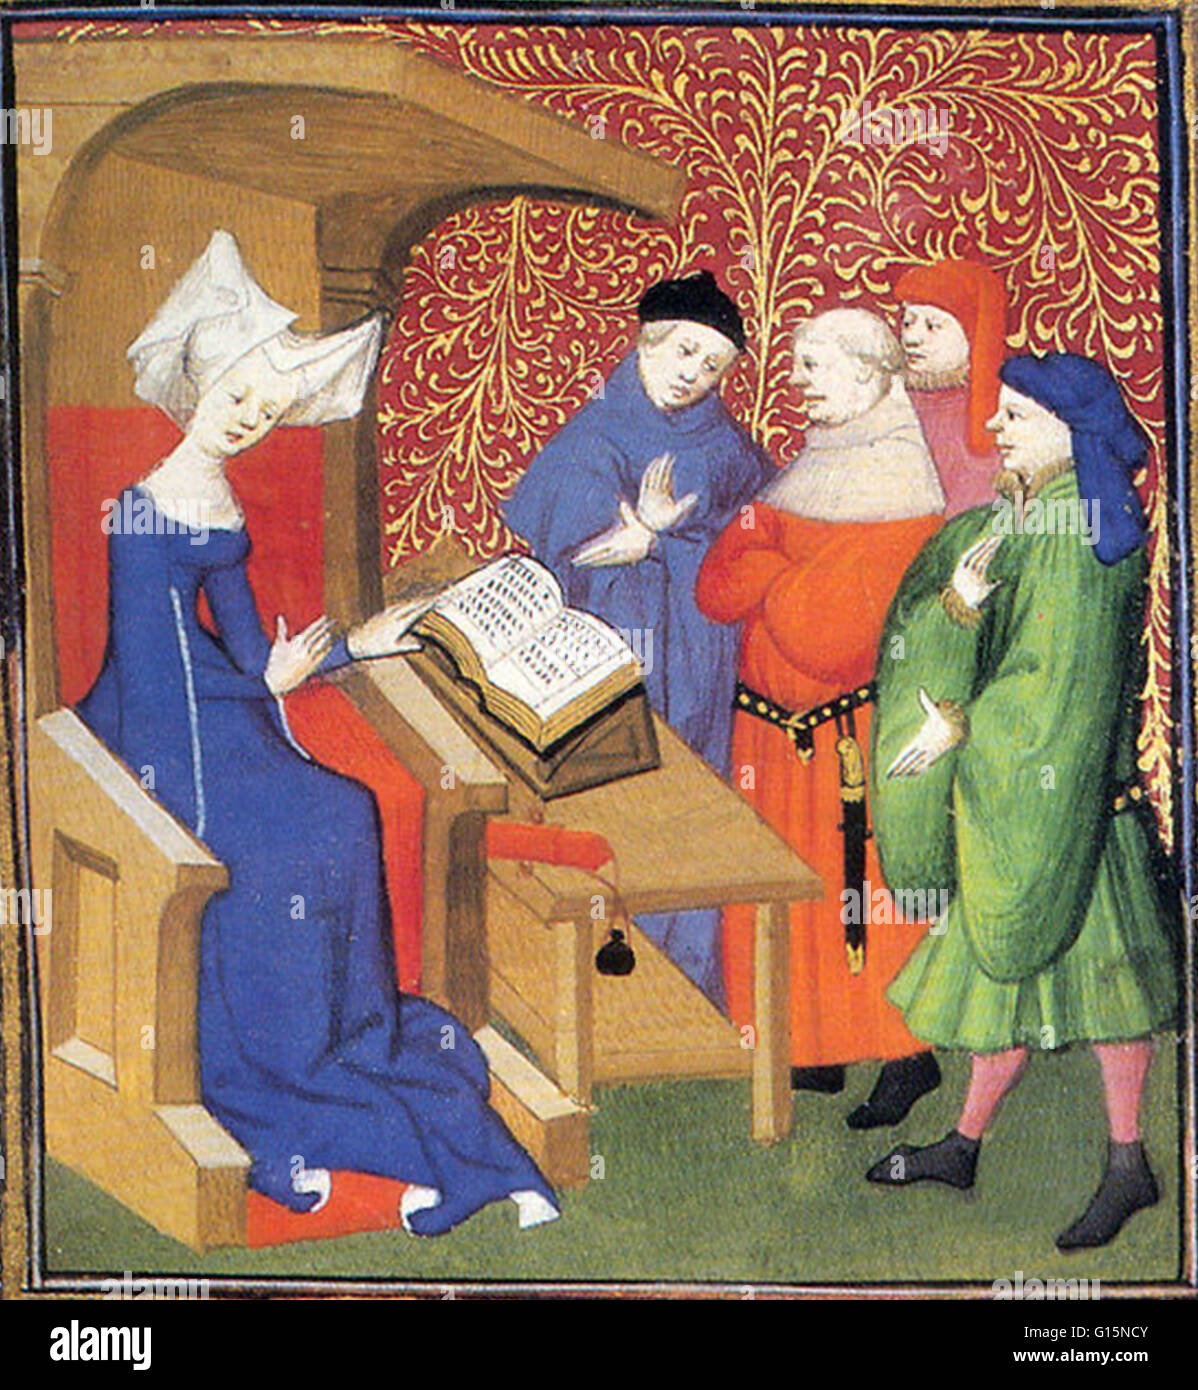 Christine de Pisan la part d'un groupe d'hommes. Christine de Pisan (1364-c.1430) était un écrivain français né à l'époque médiévale de nombreux ouvrages, y compris des poèmes de l'amour courtois, une biographie de Charles V de France, et plusieurs ouvrages défendant les femmes. Elle a été c Banque D'Images